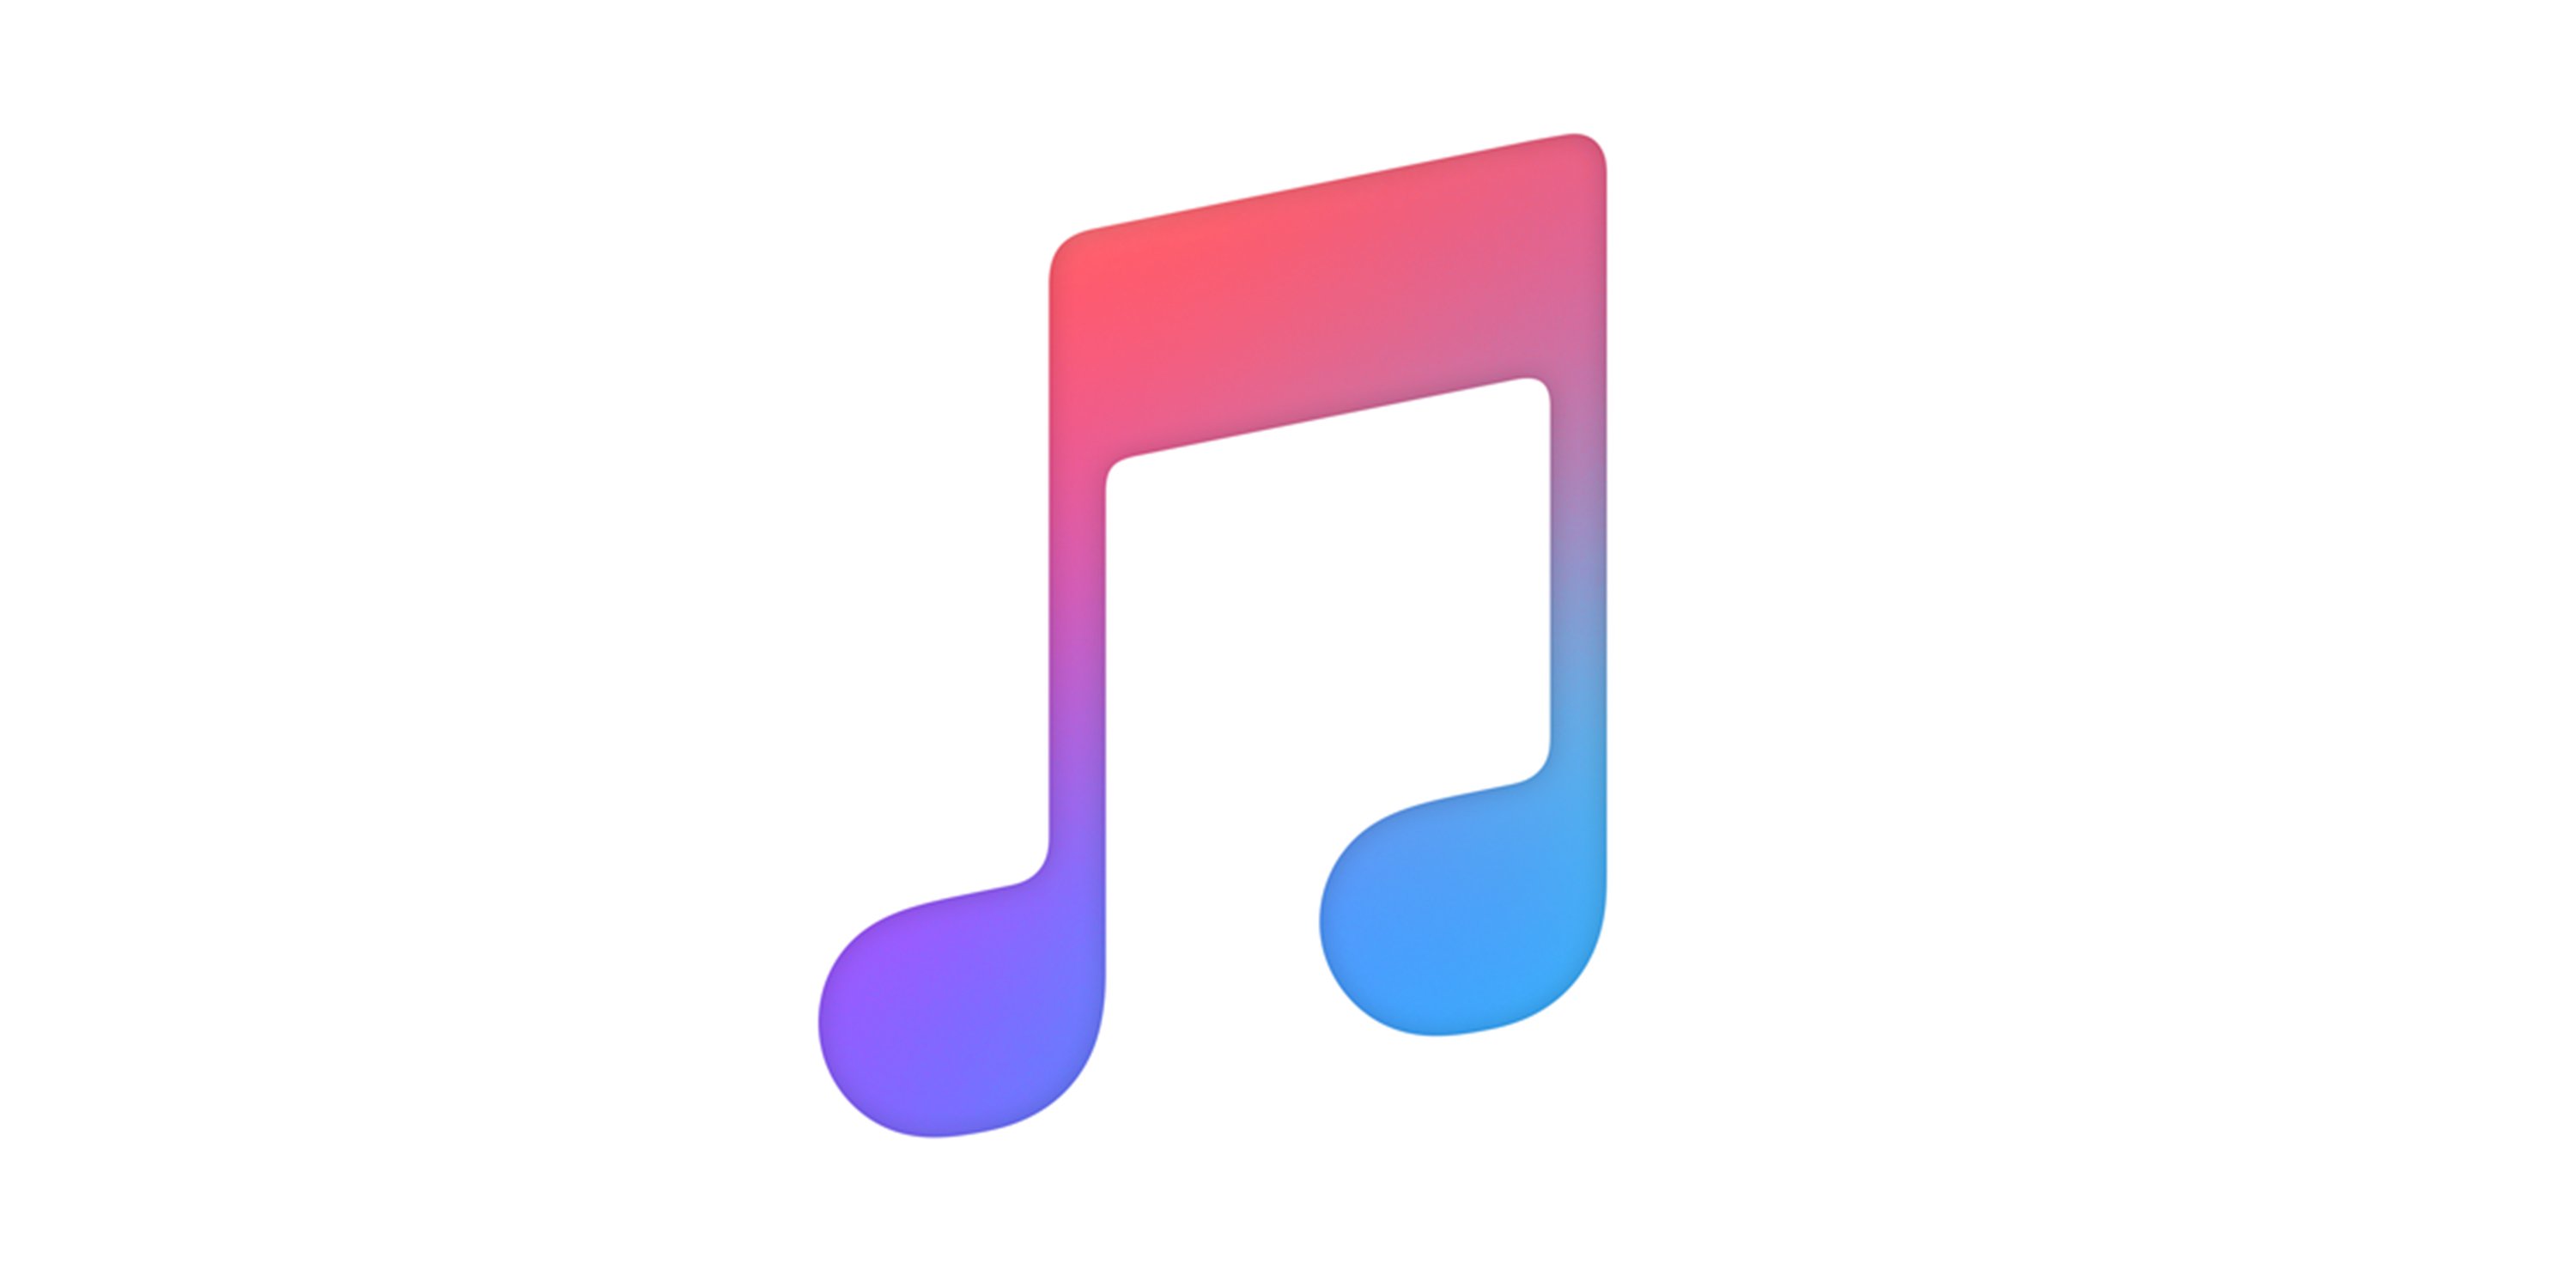 vier-jahre-nach-start-apple-music-z-hlt-60-millionen-nutzer-hifi-de